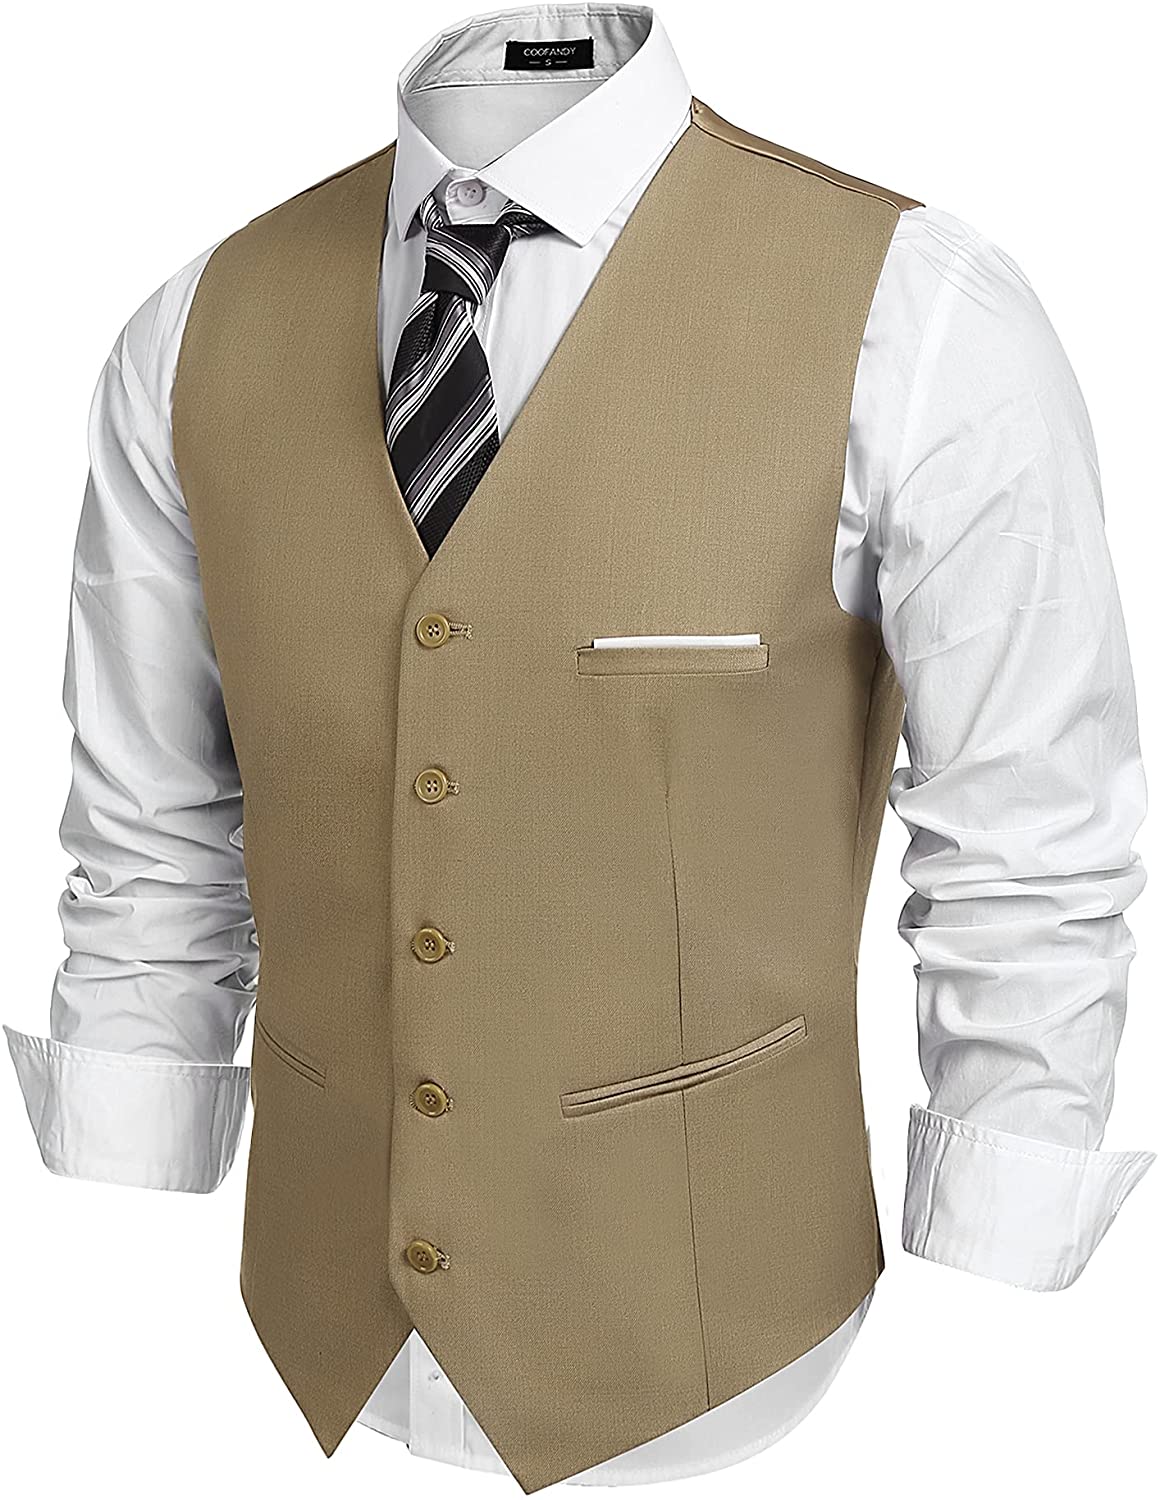 COOFANDY Mens Fashion Formal Slim Fit Business Dress Suit Vest Waistcoat